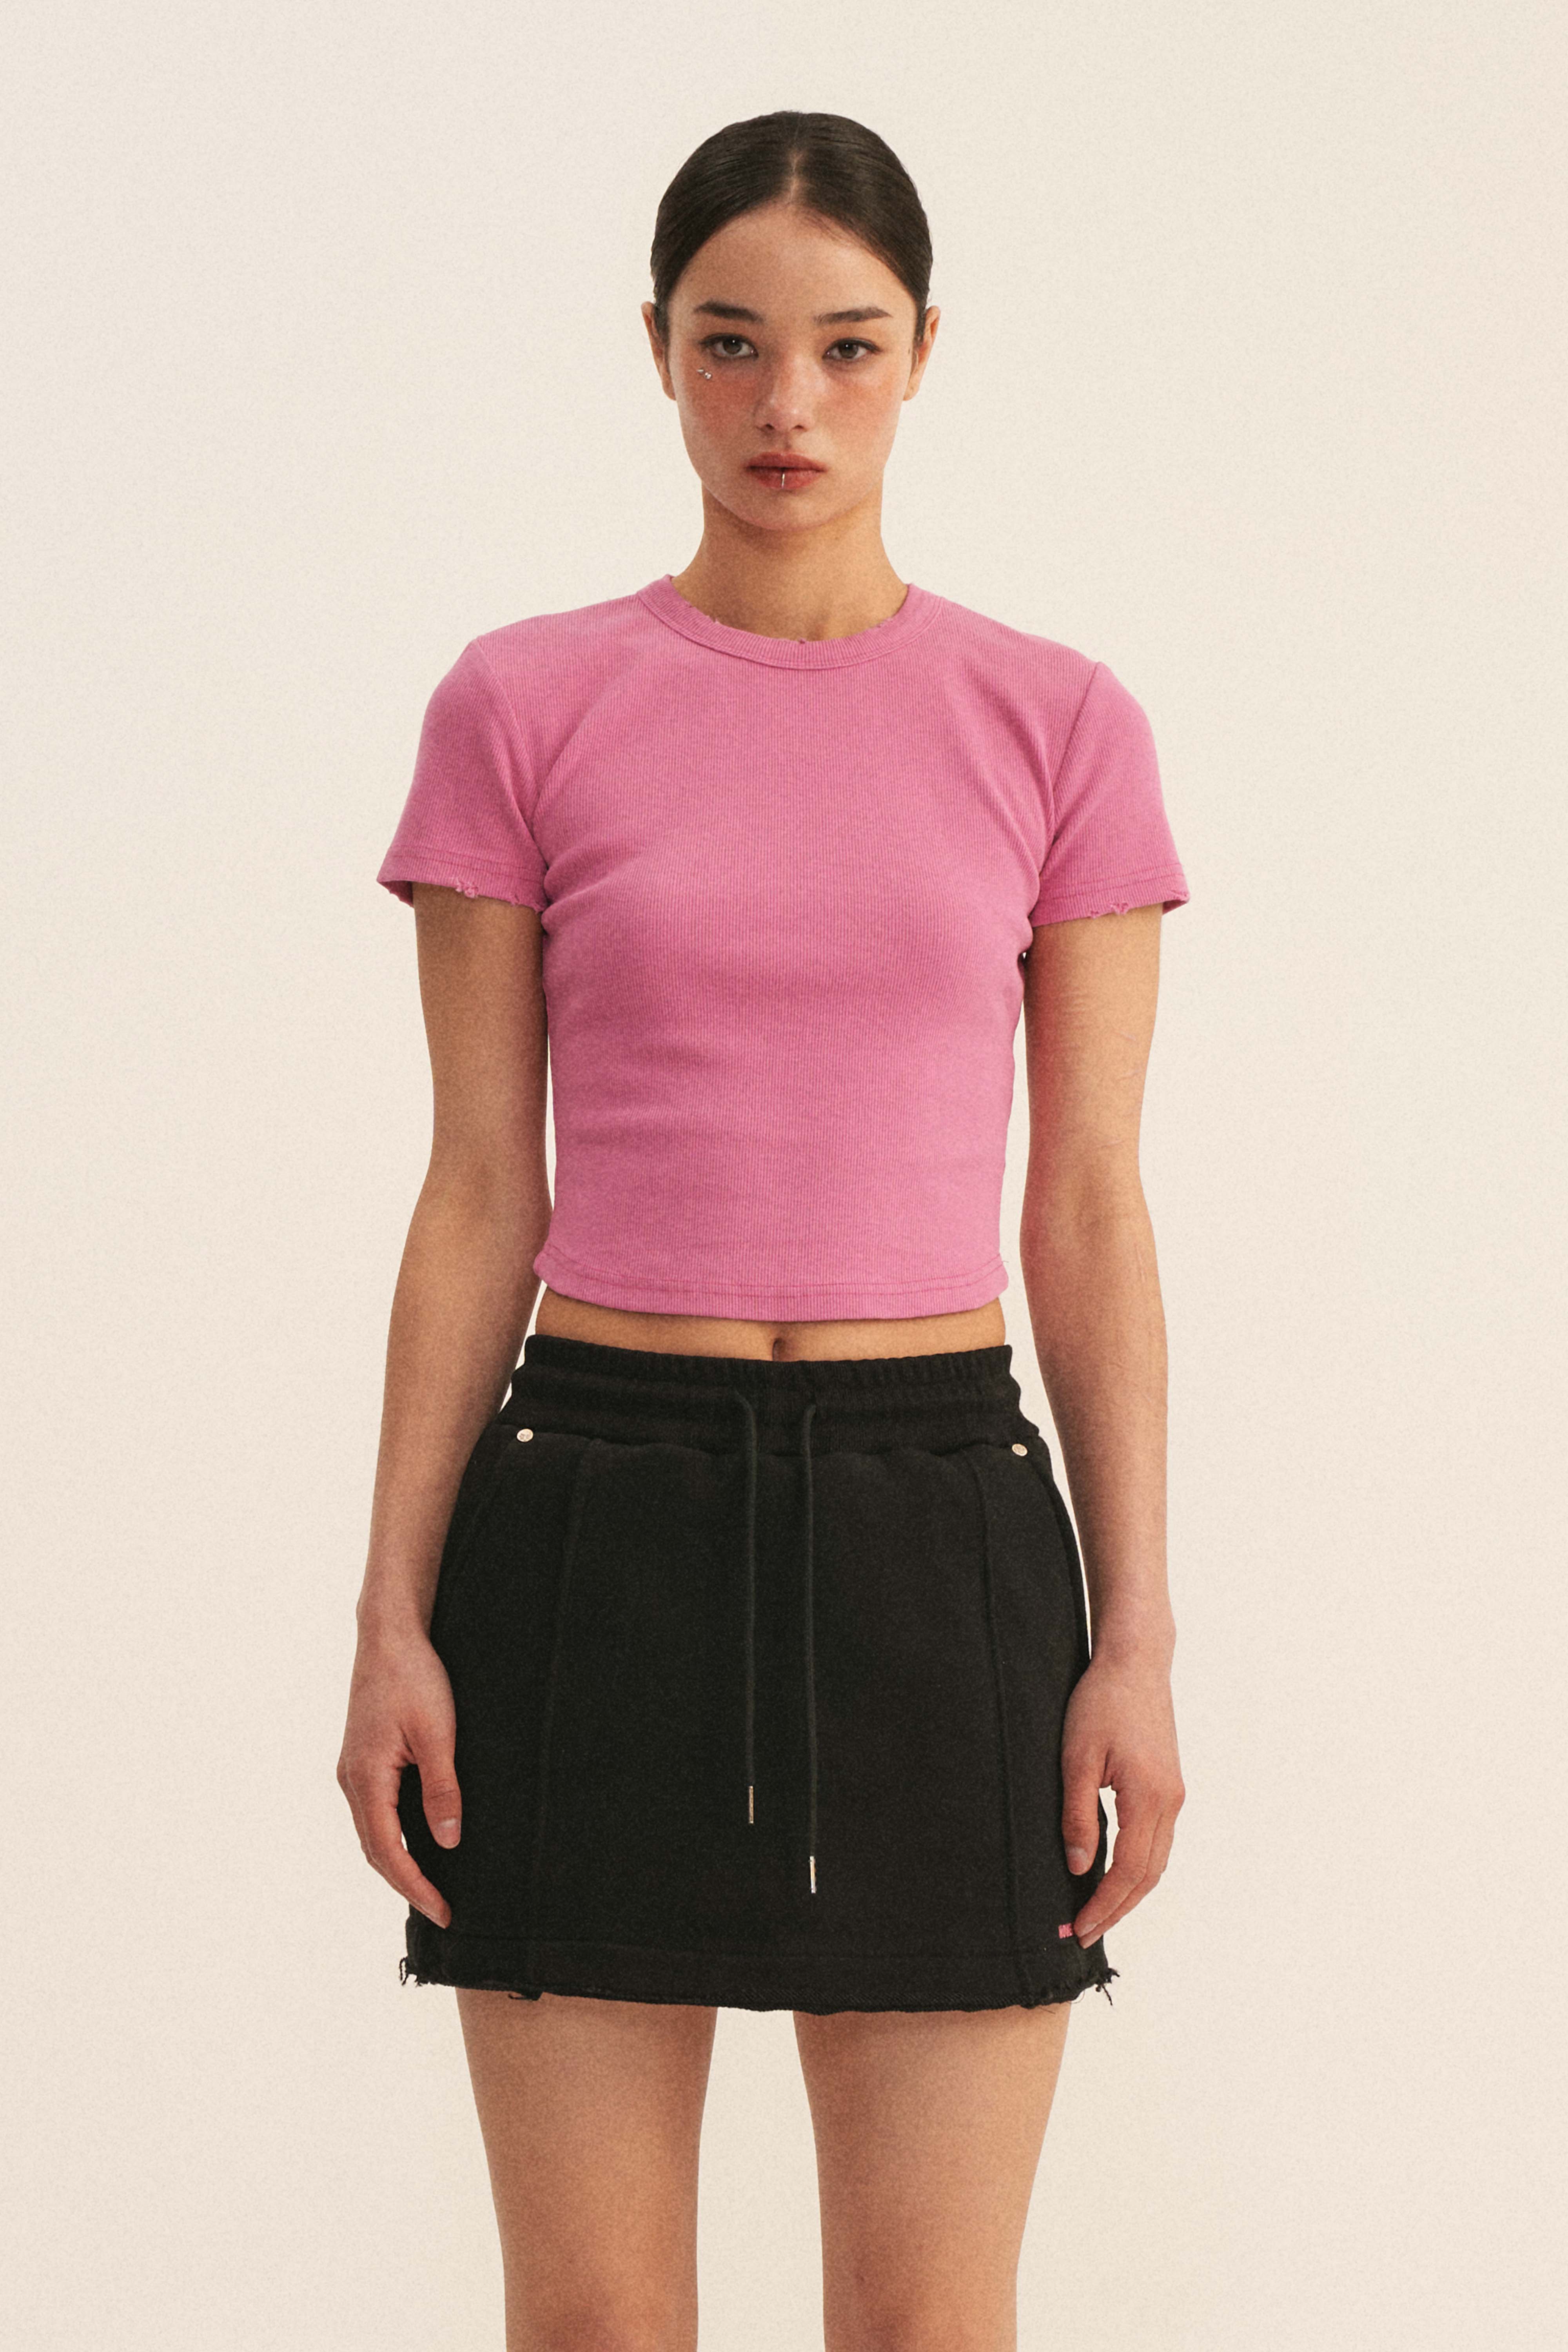 Vintage Short Sleeve T-Shirt (Pink)